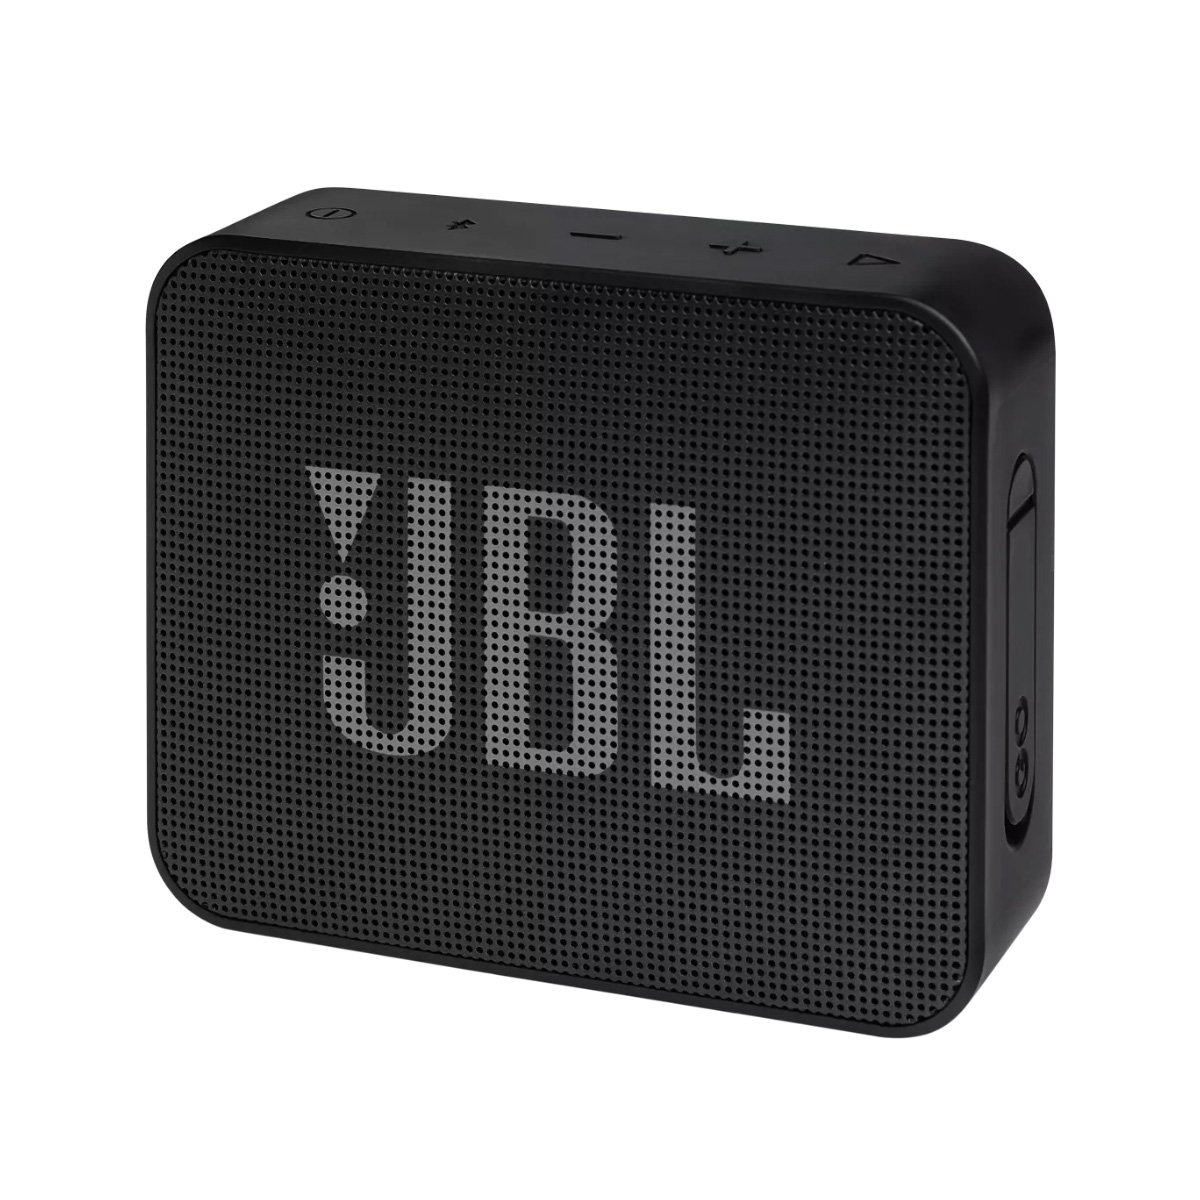 Caixa de Som Portátil JBL GO Essential - Bluetooth - À prova D`Água IPX7 - 3.1W - Preto - JBLGOESBLK